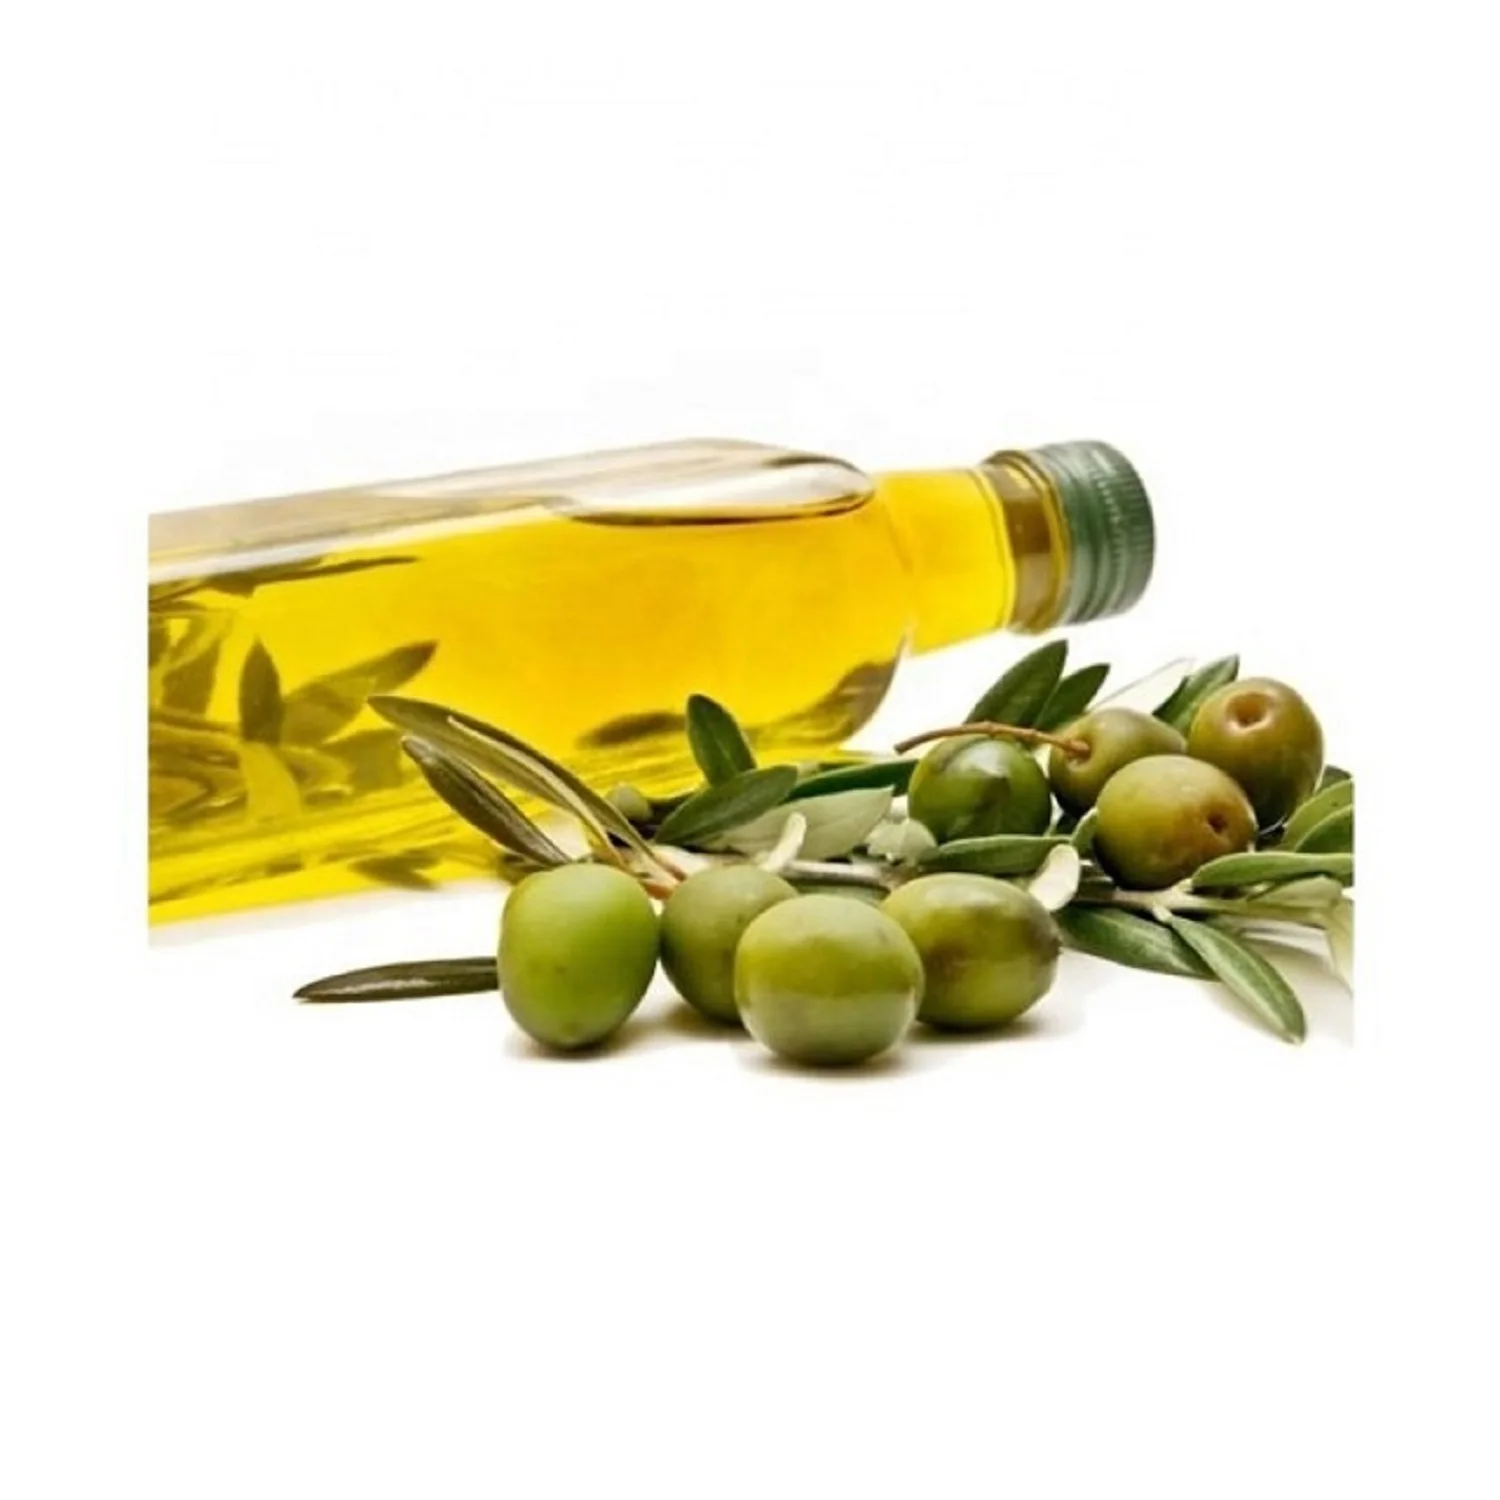 Оливковое масло первого отжима, высокое качество, оливковое масло первого отжима для ресторанов, пластиковая бутылка 5 л